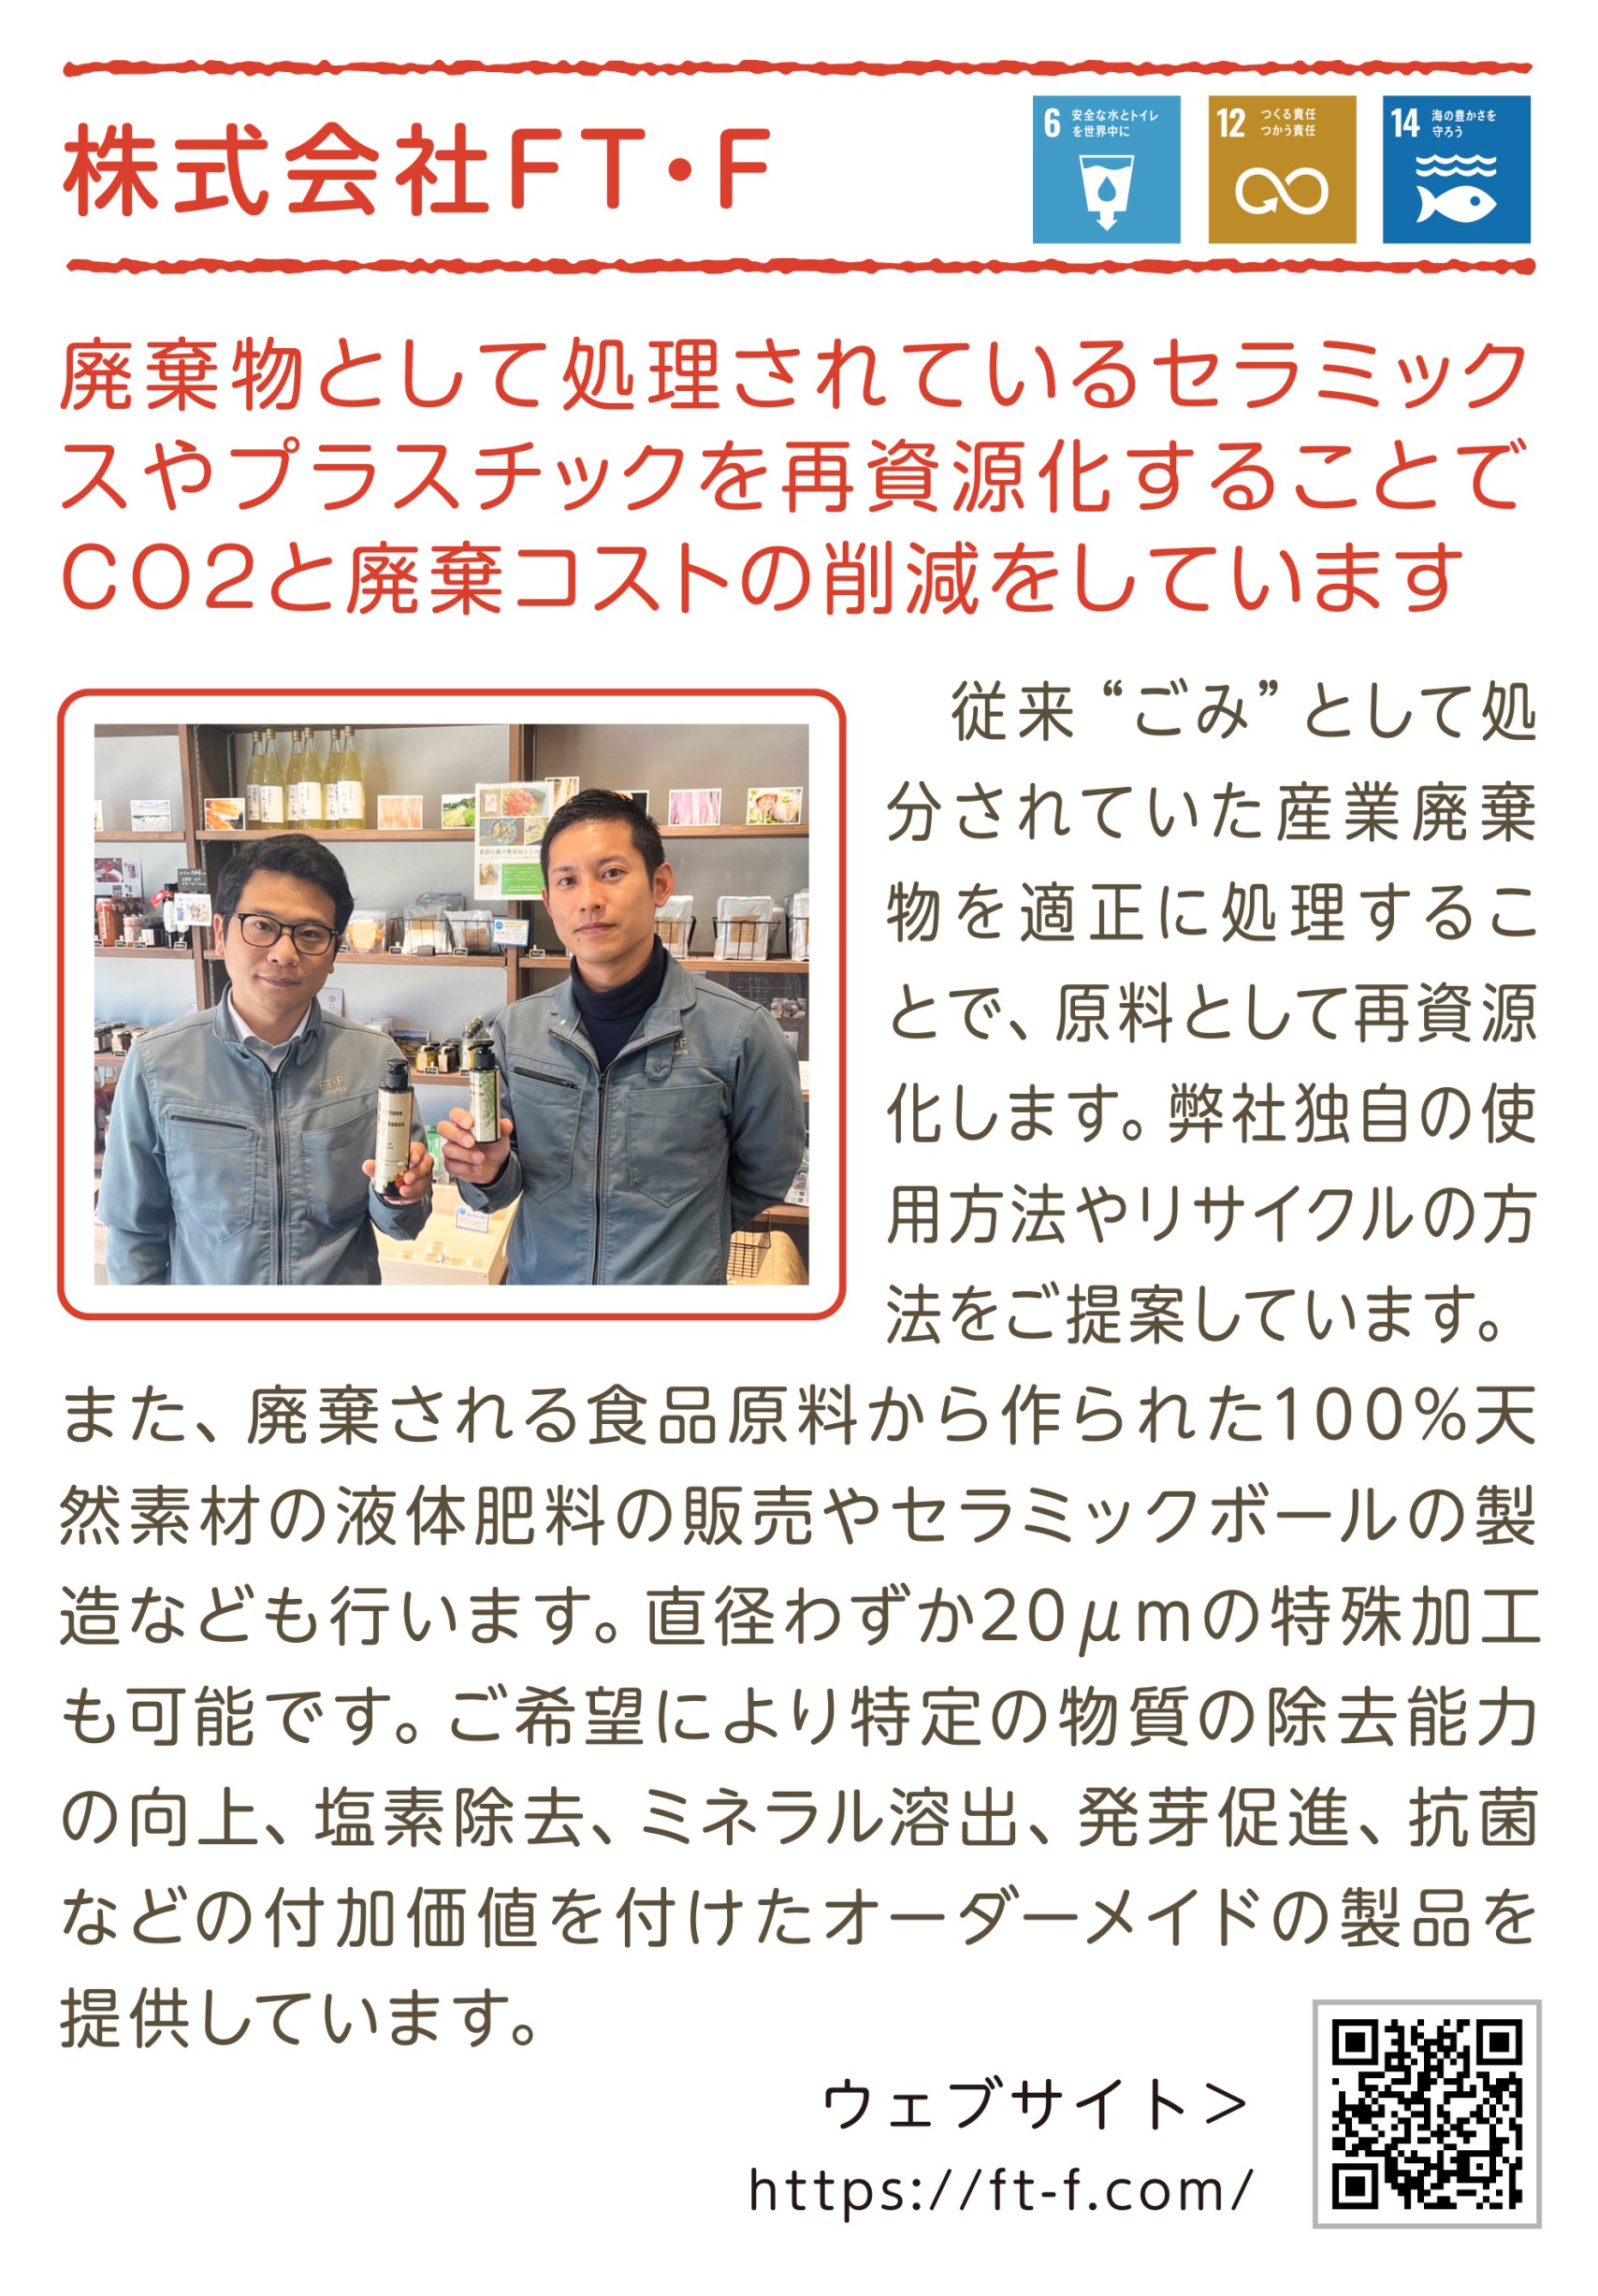 岐阜県恵那市の環境配慮型企業として地元紙で紹介していただきました。